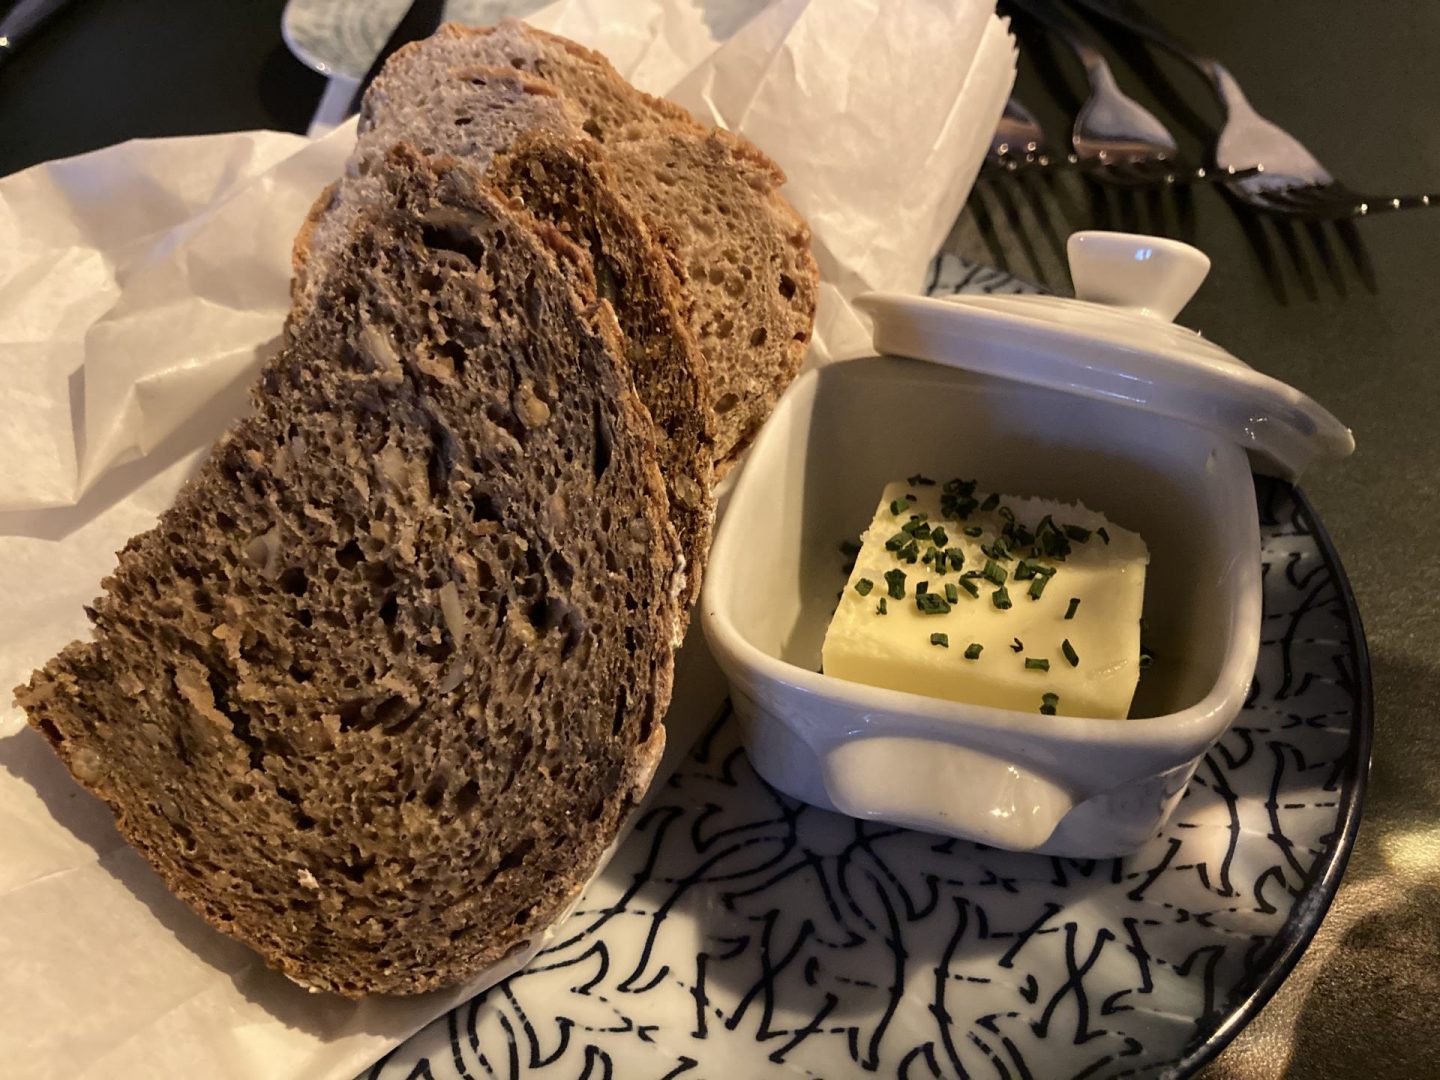 Erfahrung Bewertung Kritik Zum Grünen Gaul Bochum Menükarussell Brot und Butter Foodblog Sternestulle